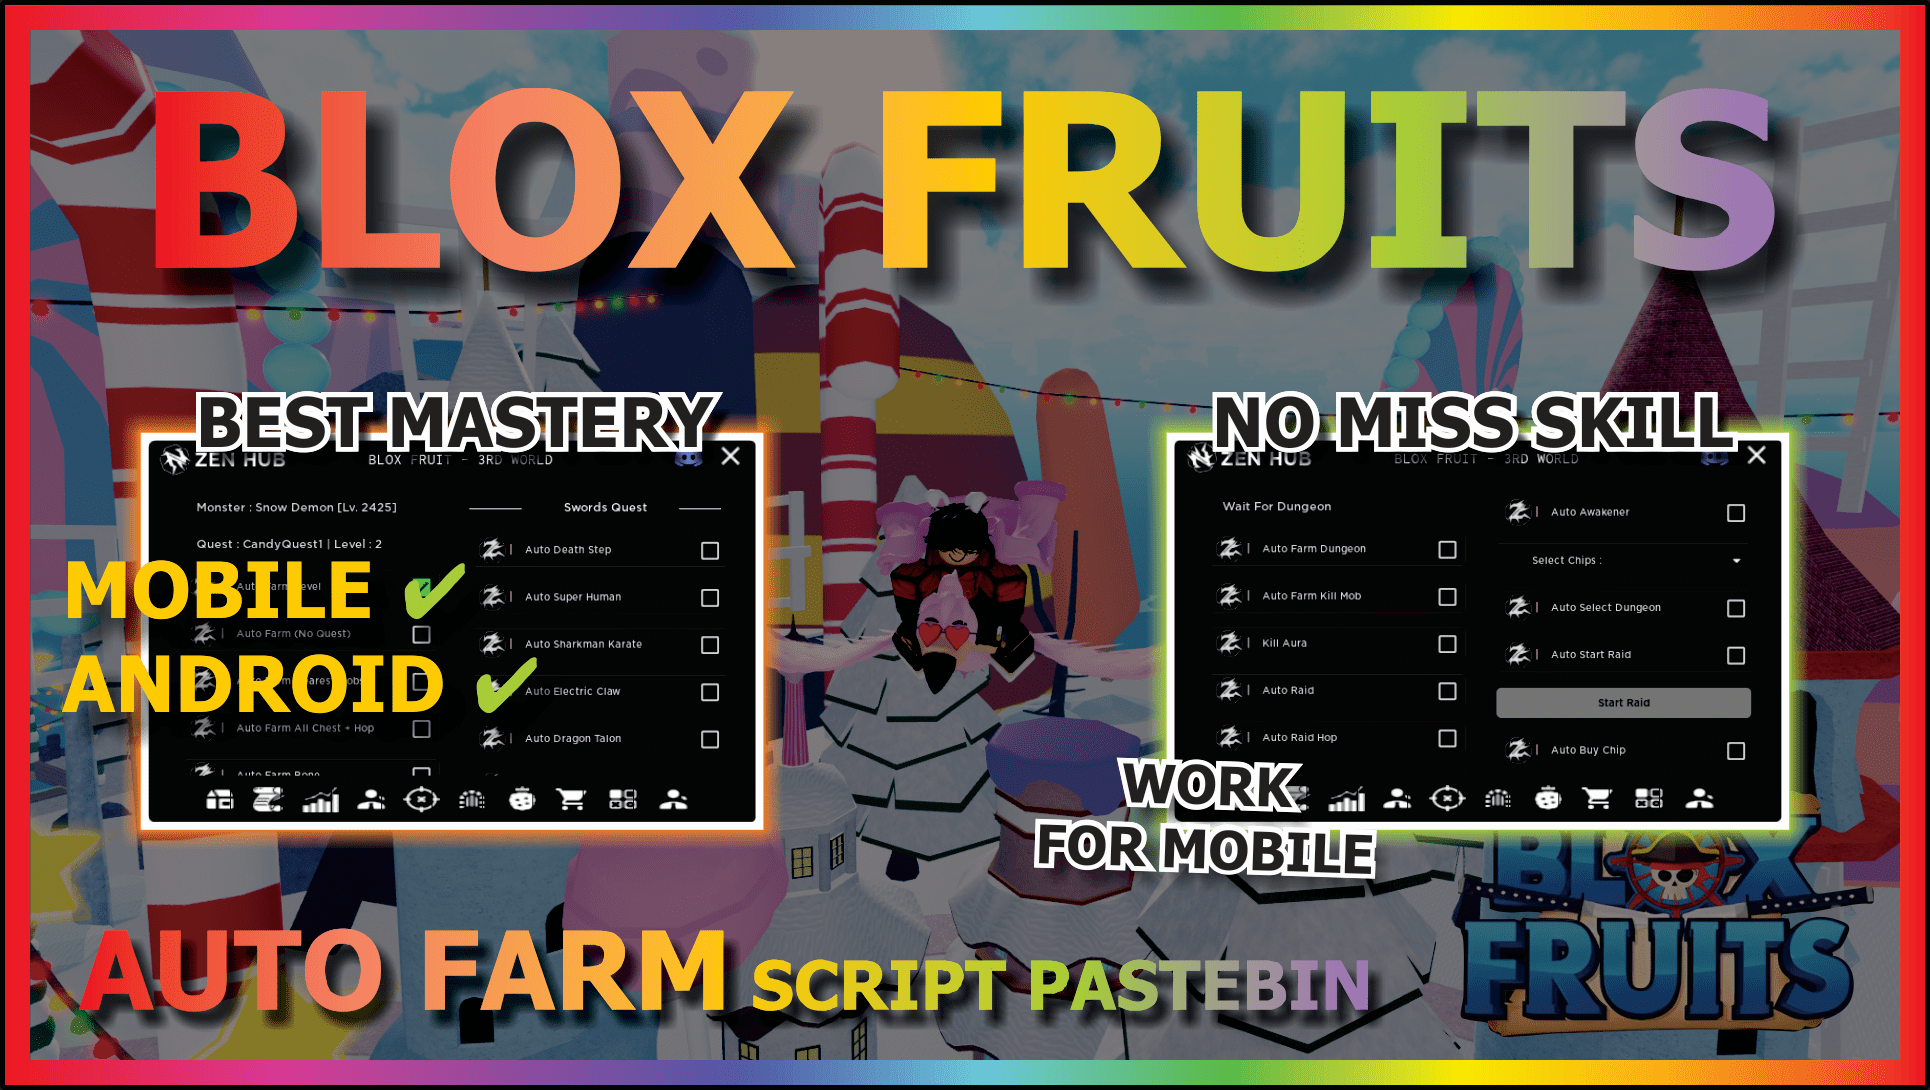 Blox fruits mas usando Fluxus! Novo executor mobile AO VIVO 